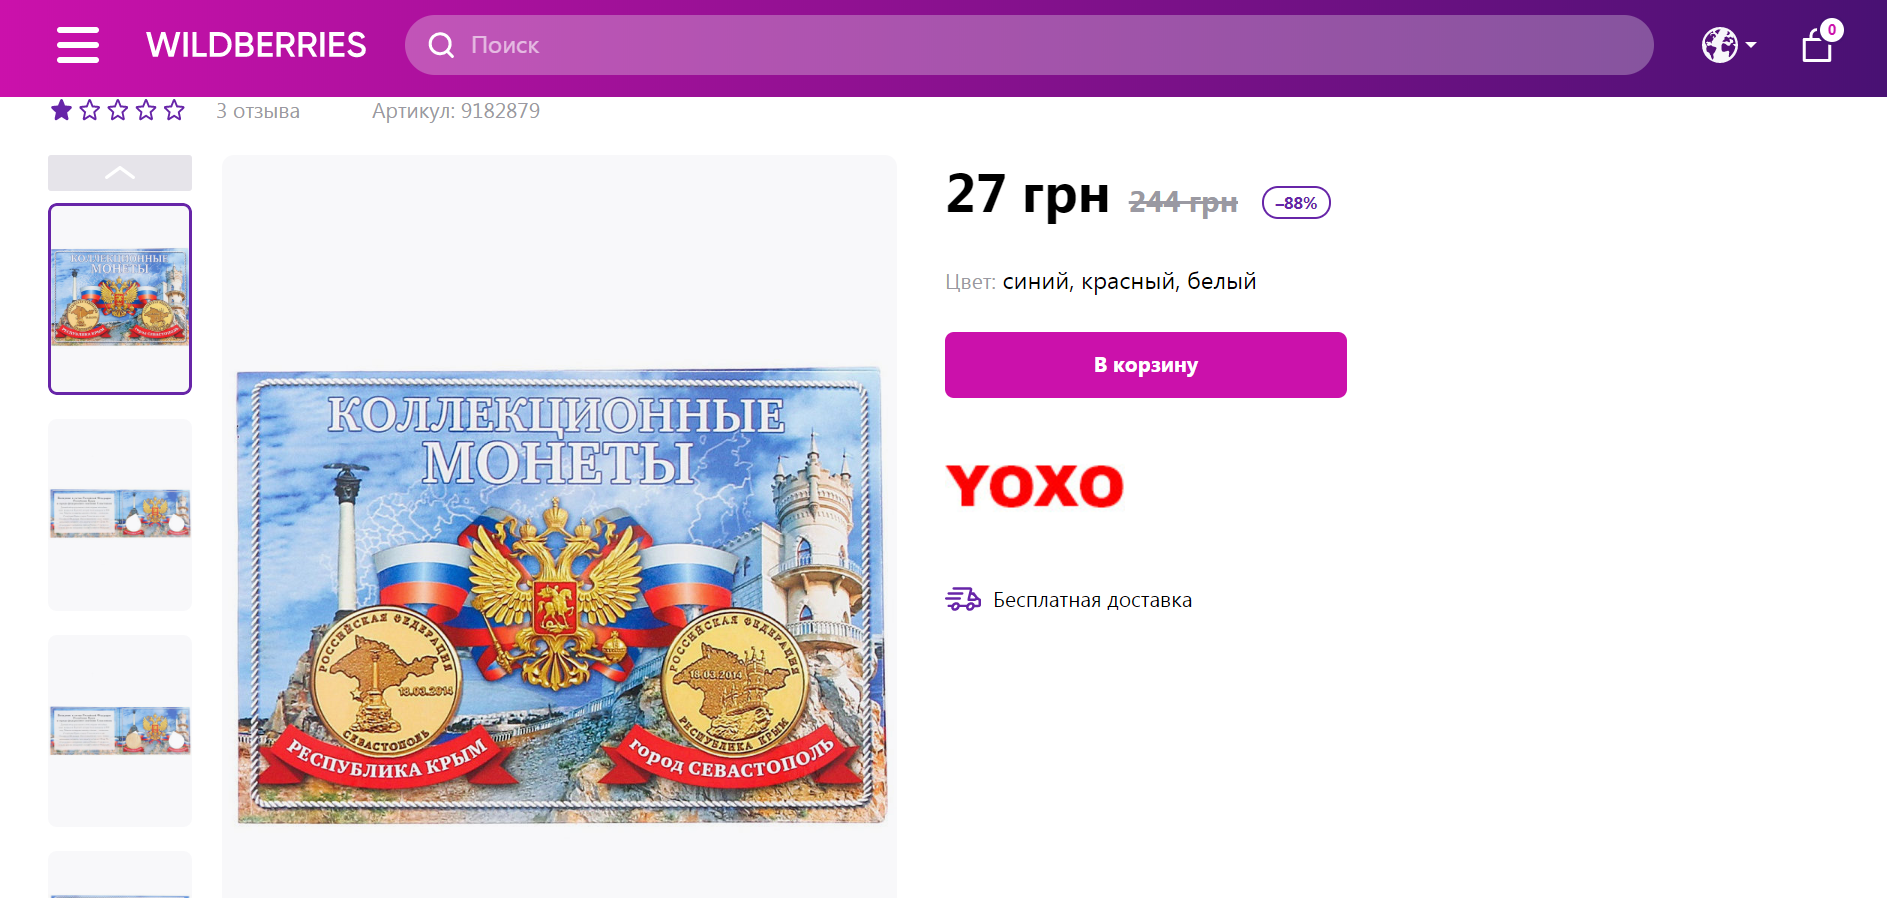 Українцям пропонують альбом для монет на честь окупації Криму.